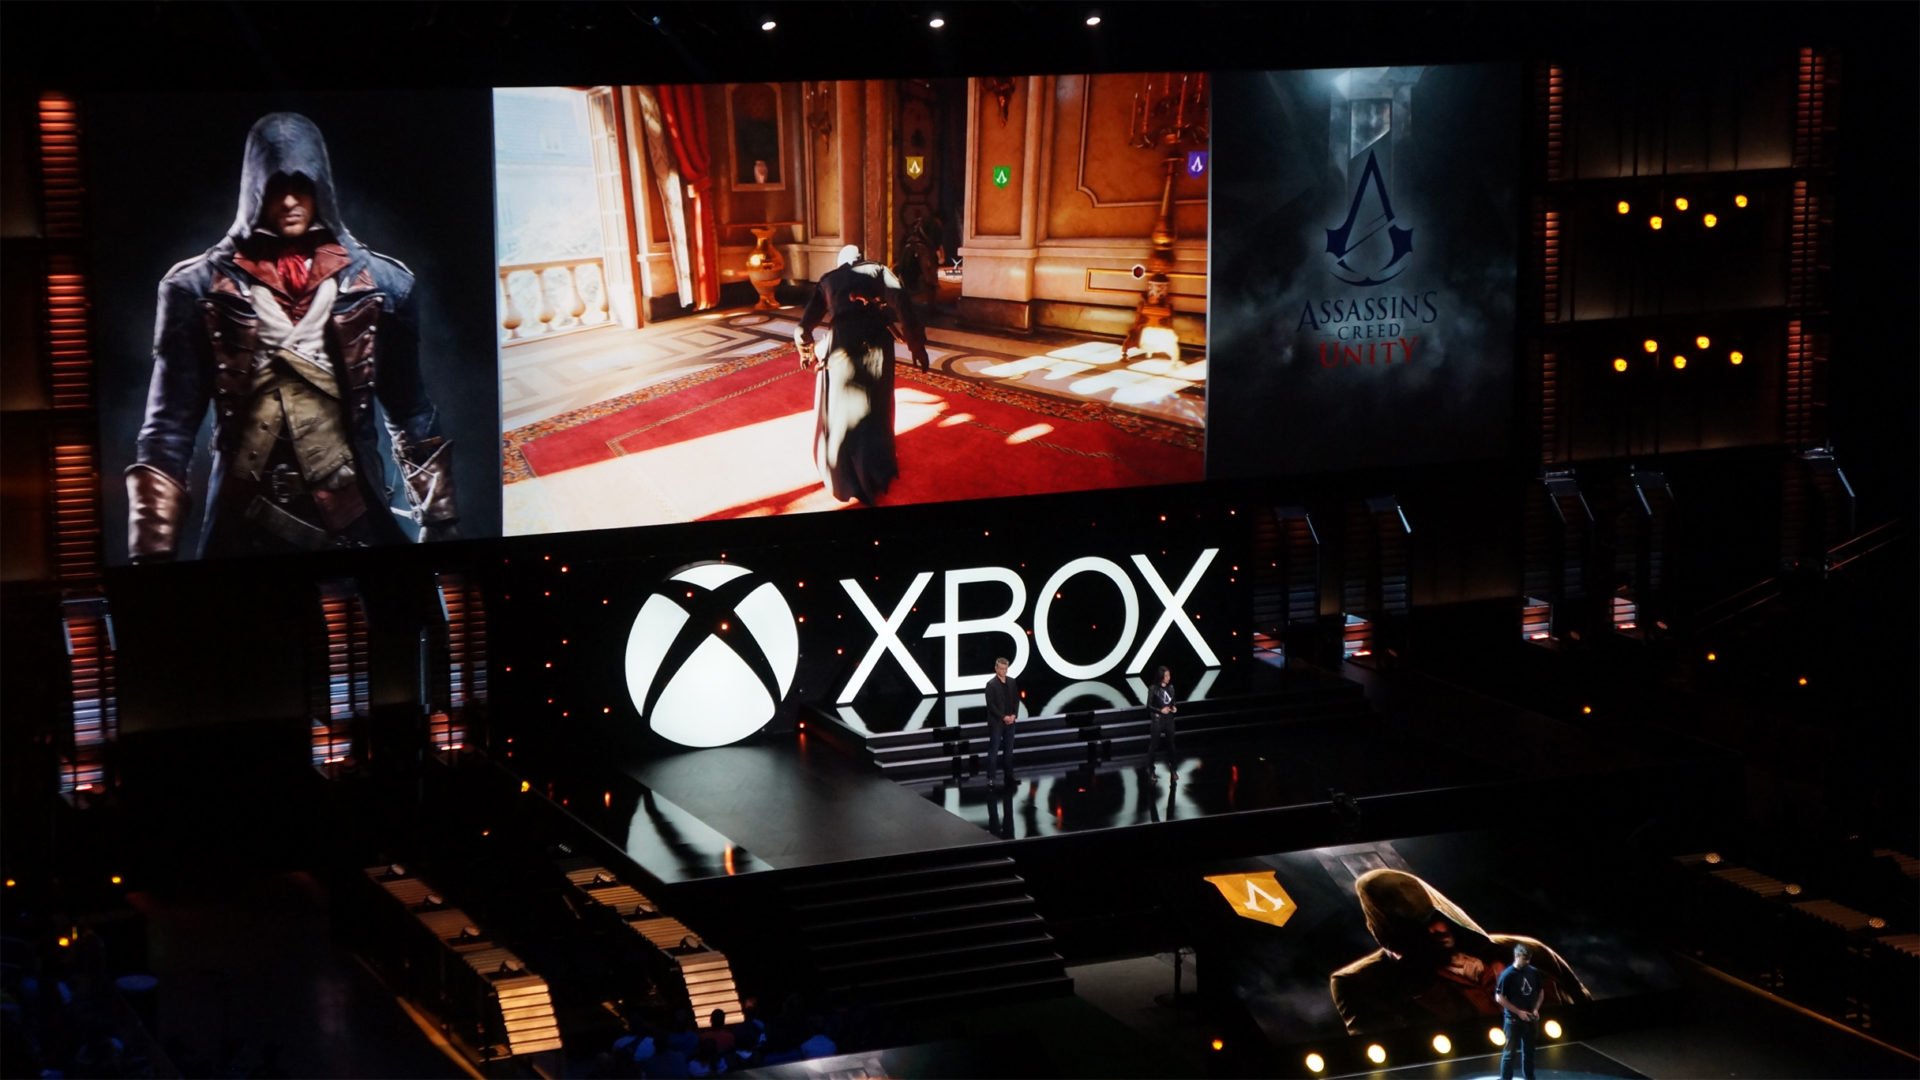 28 ตุลาคมนี้! ‘Assassin’s Creed: Unity’ จะมาเยือน!